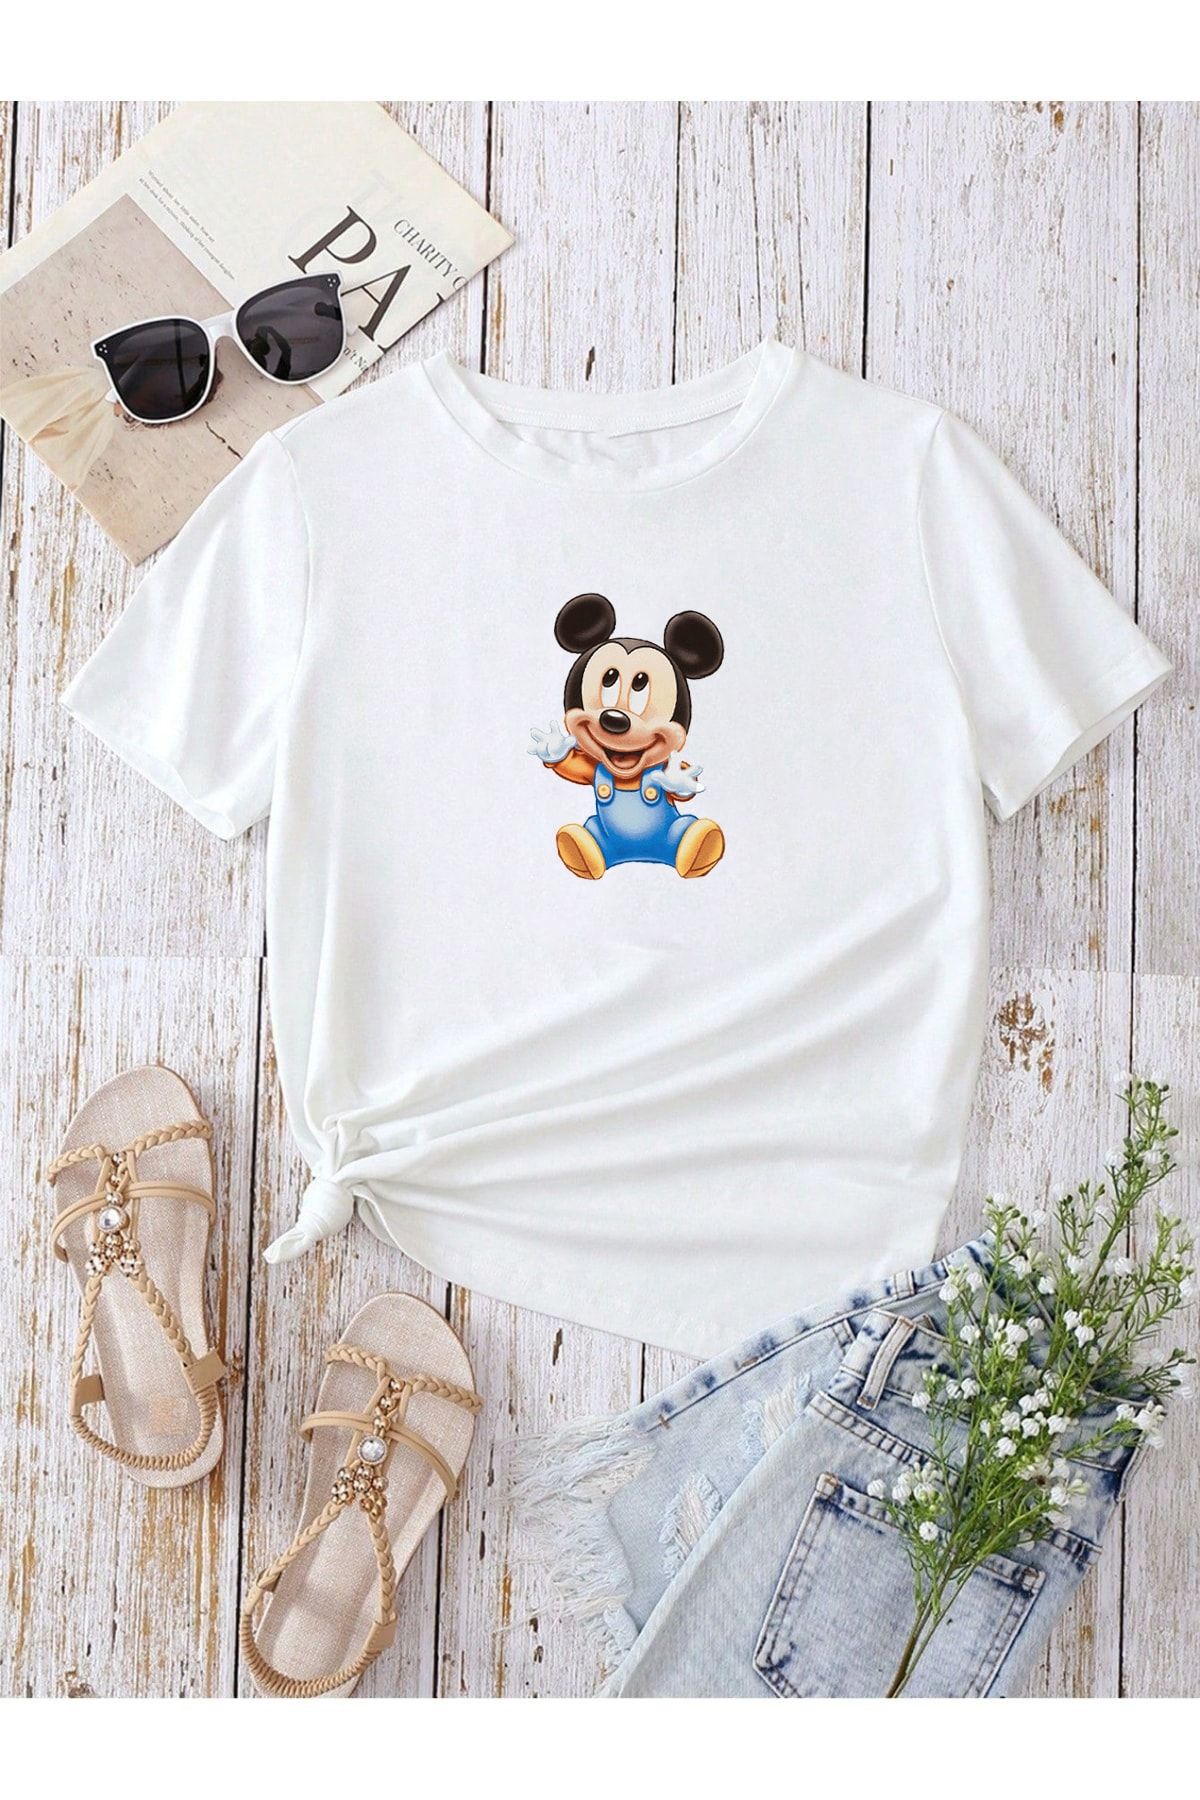 DUBU BUTİK Hamile Gebe T-shirt Bebek Mickey Mouse Baskılı - Beyaz Bisiklet Yaka Oversize Tişört